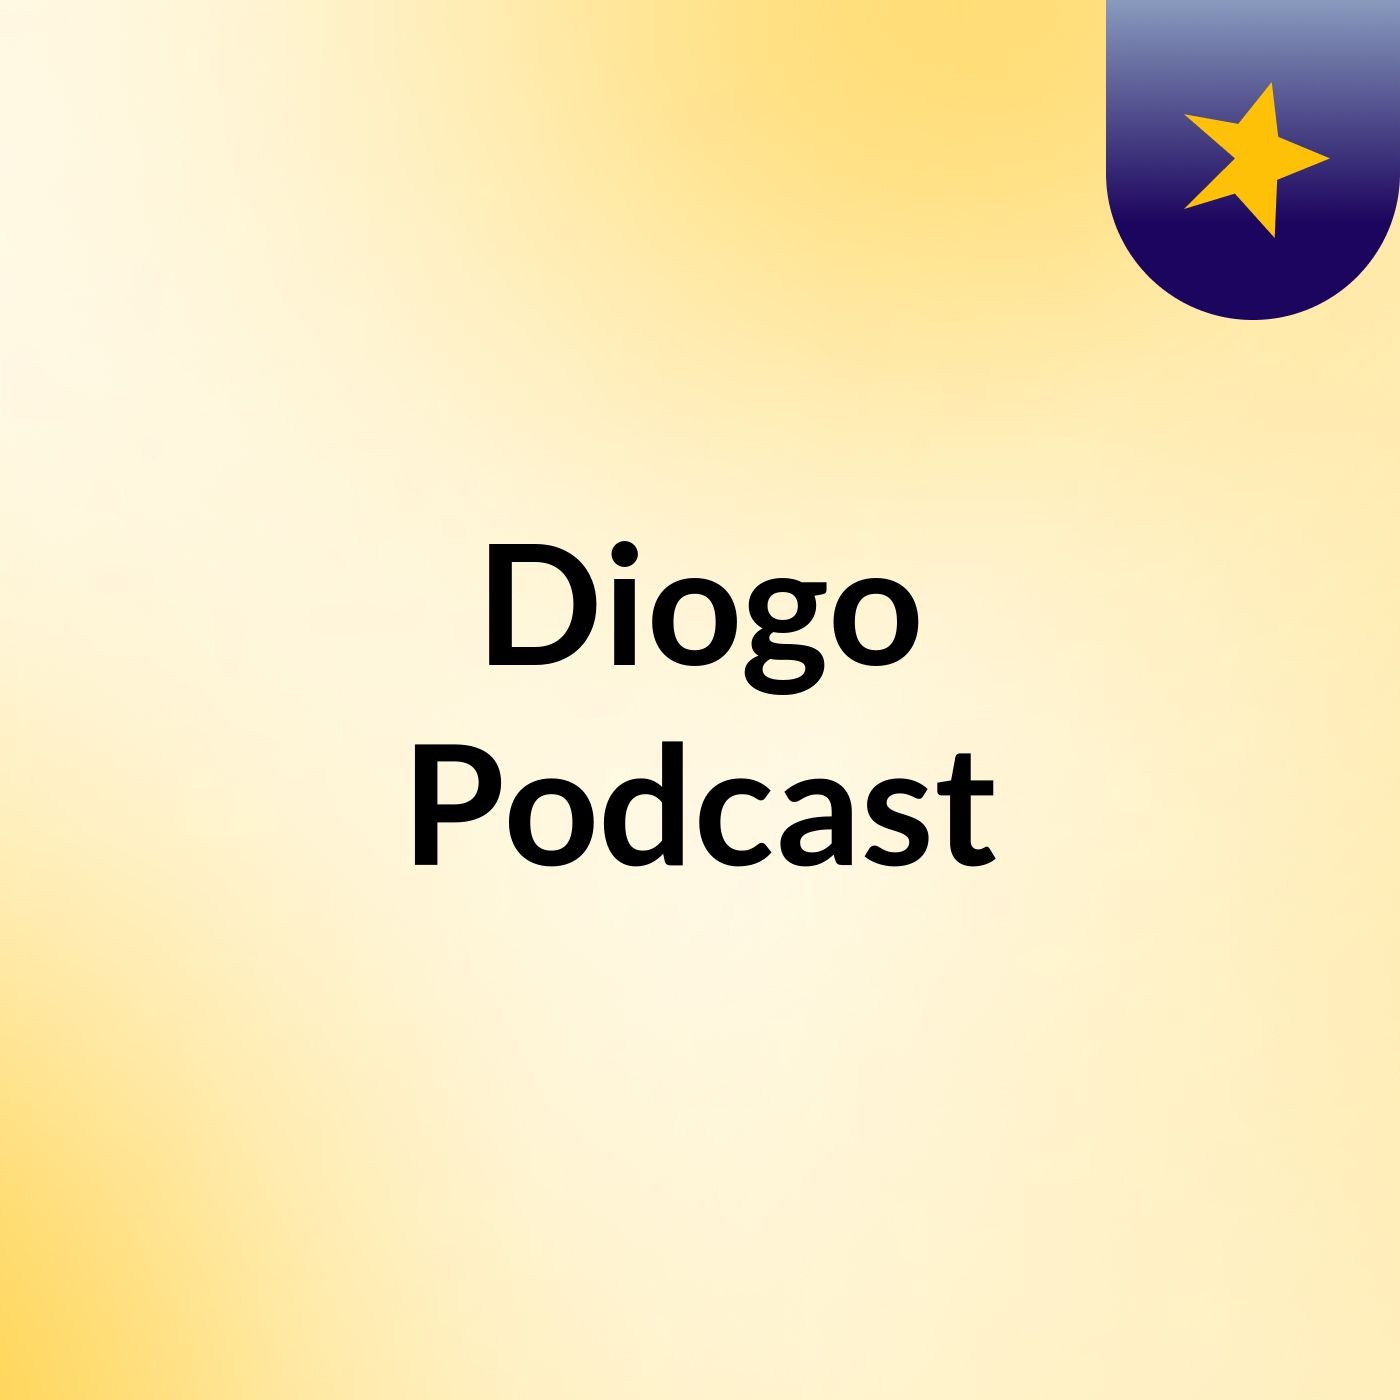 Diogo Podcast